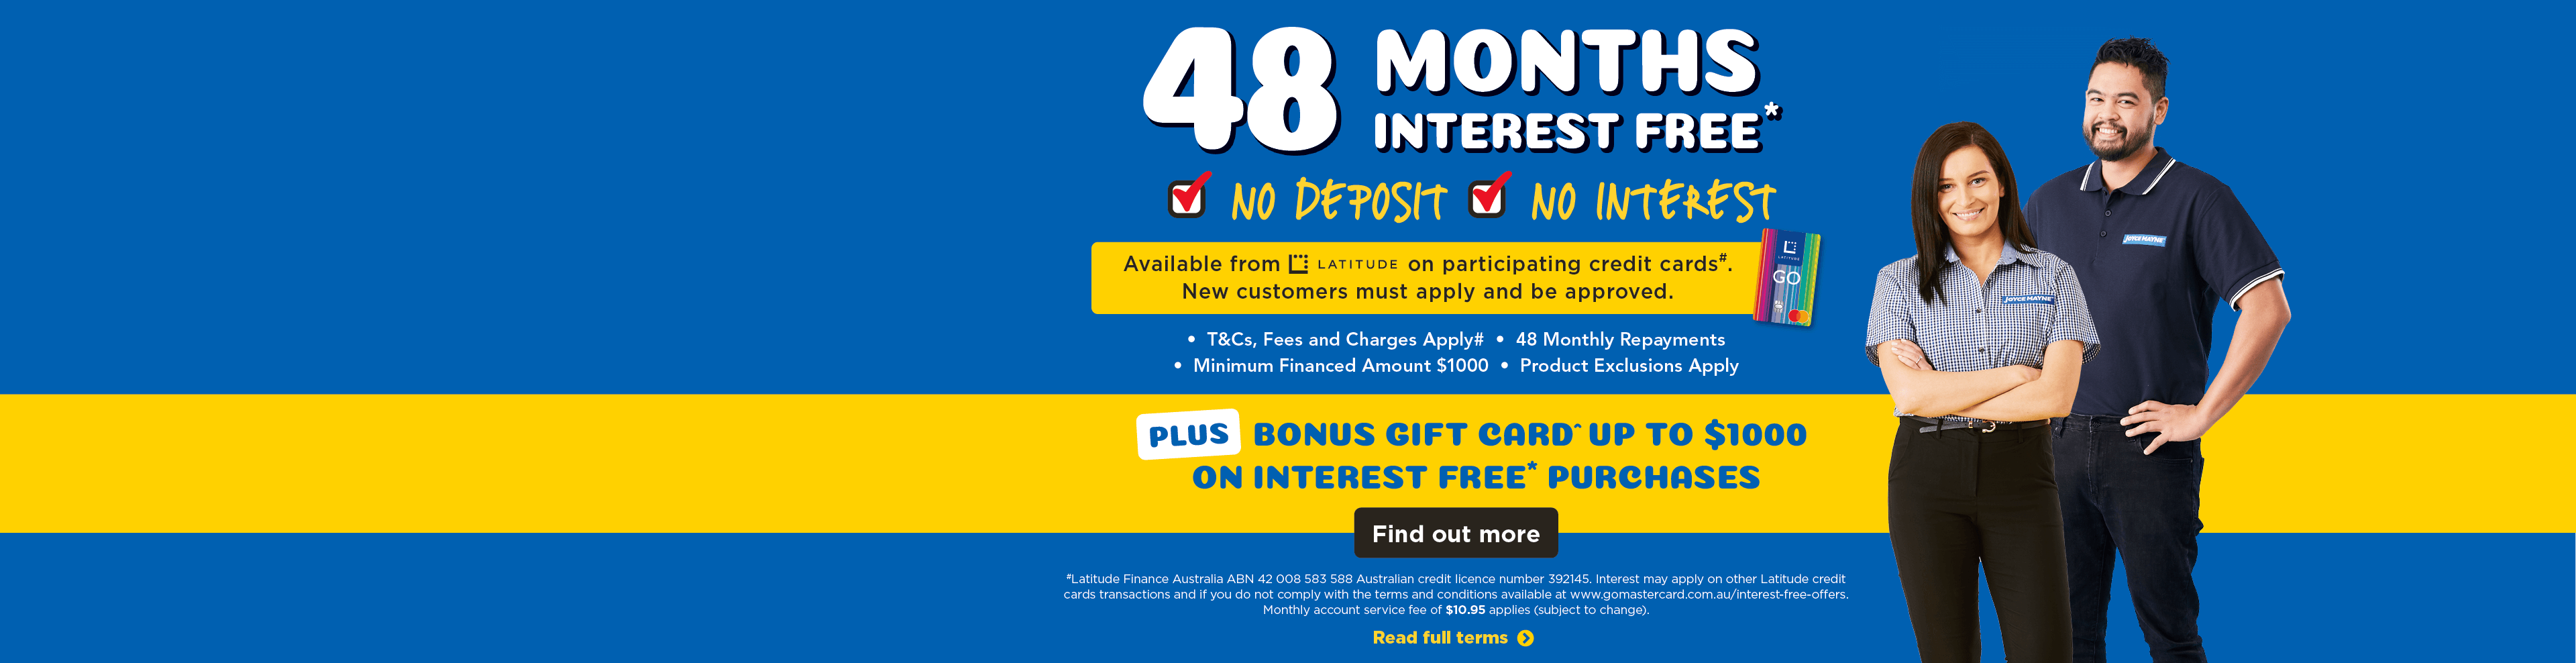 48 Months Interest Free